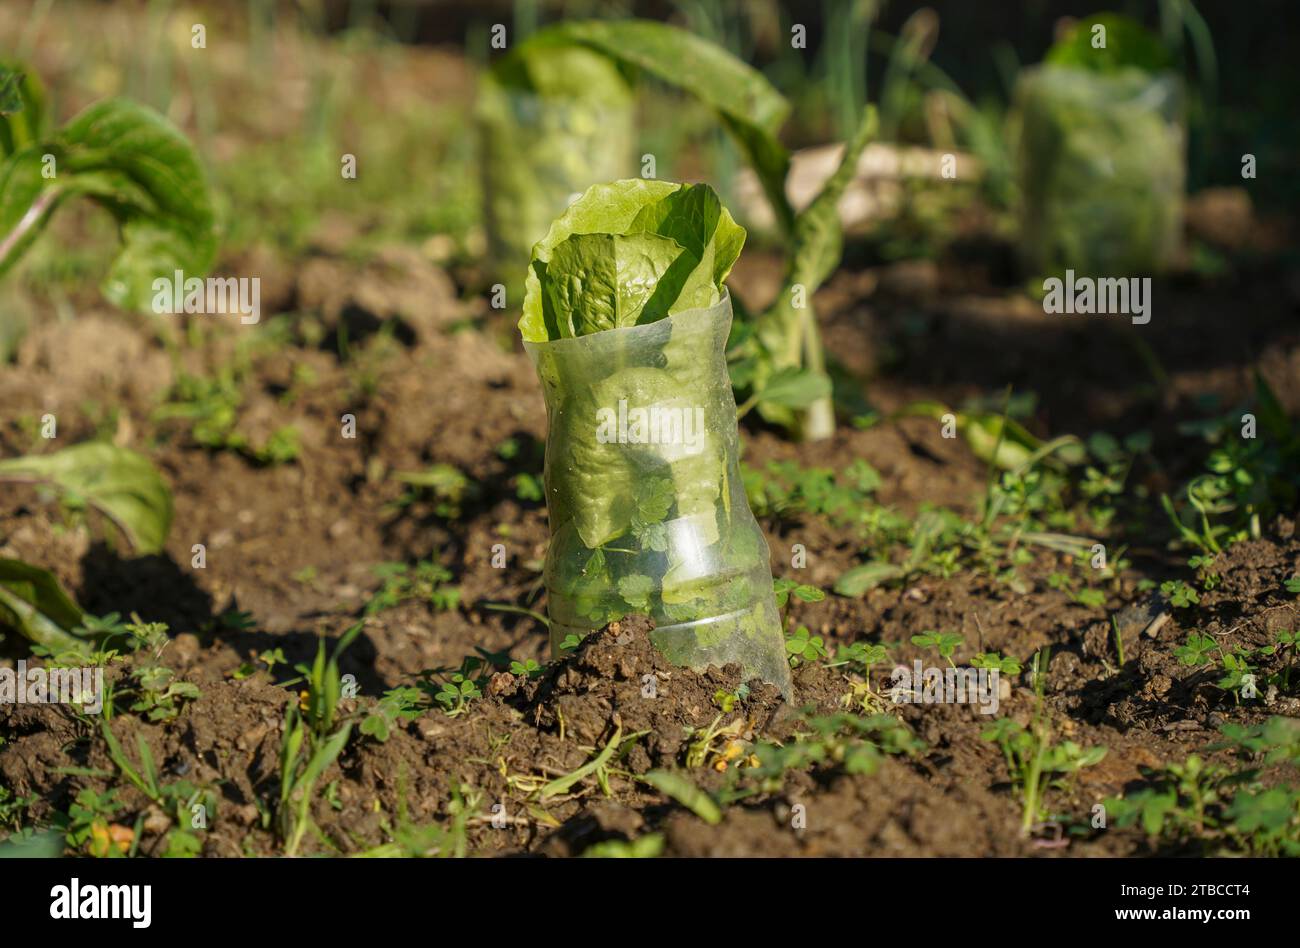 Jeunes plantes de laitue romaine dans le sol dans le jardin potager, avec bouteille en plastique autour pour protéger. Espagne. Banque D'Images